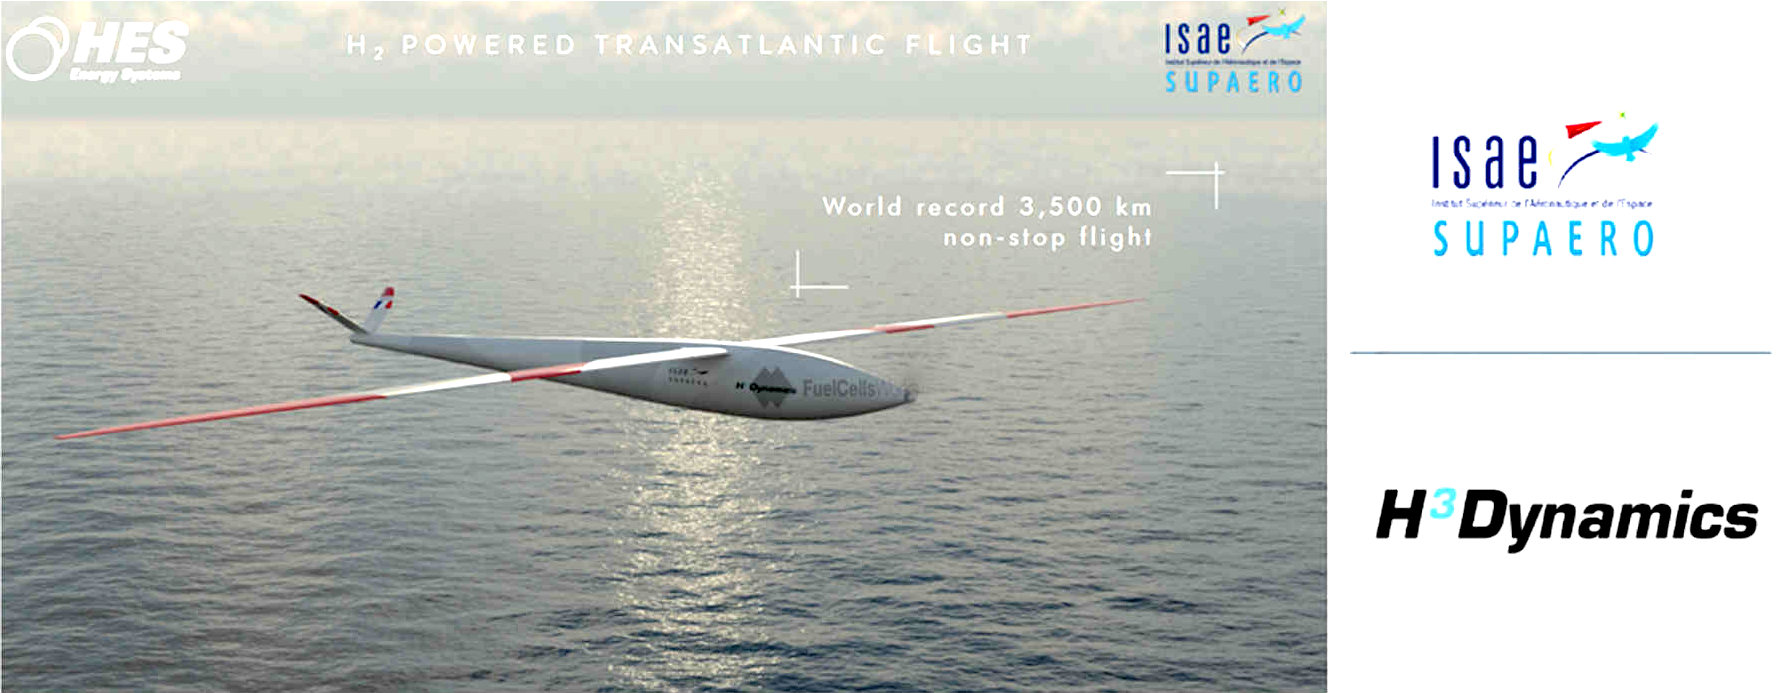 Transatlantic hydrogen fuel cell powered drone